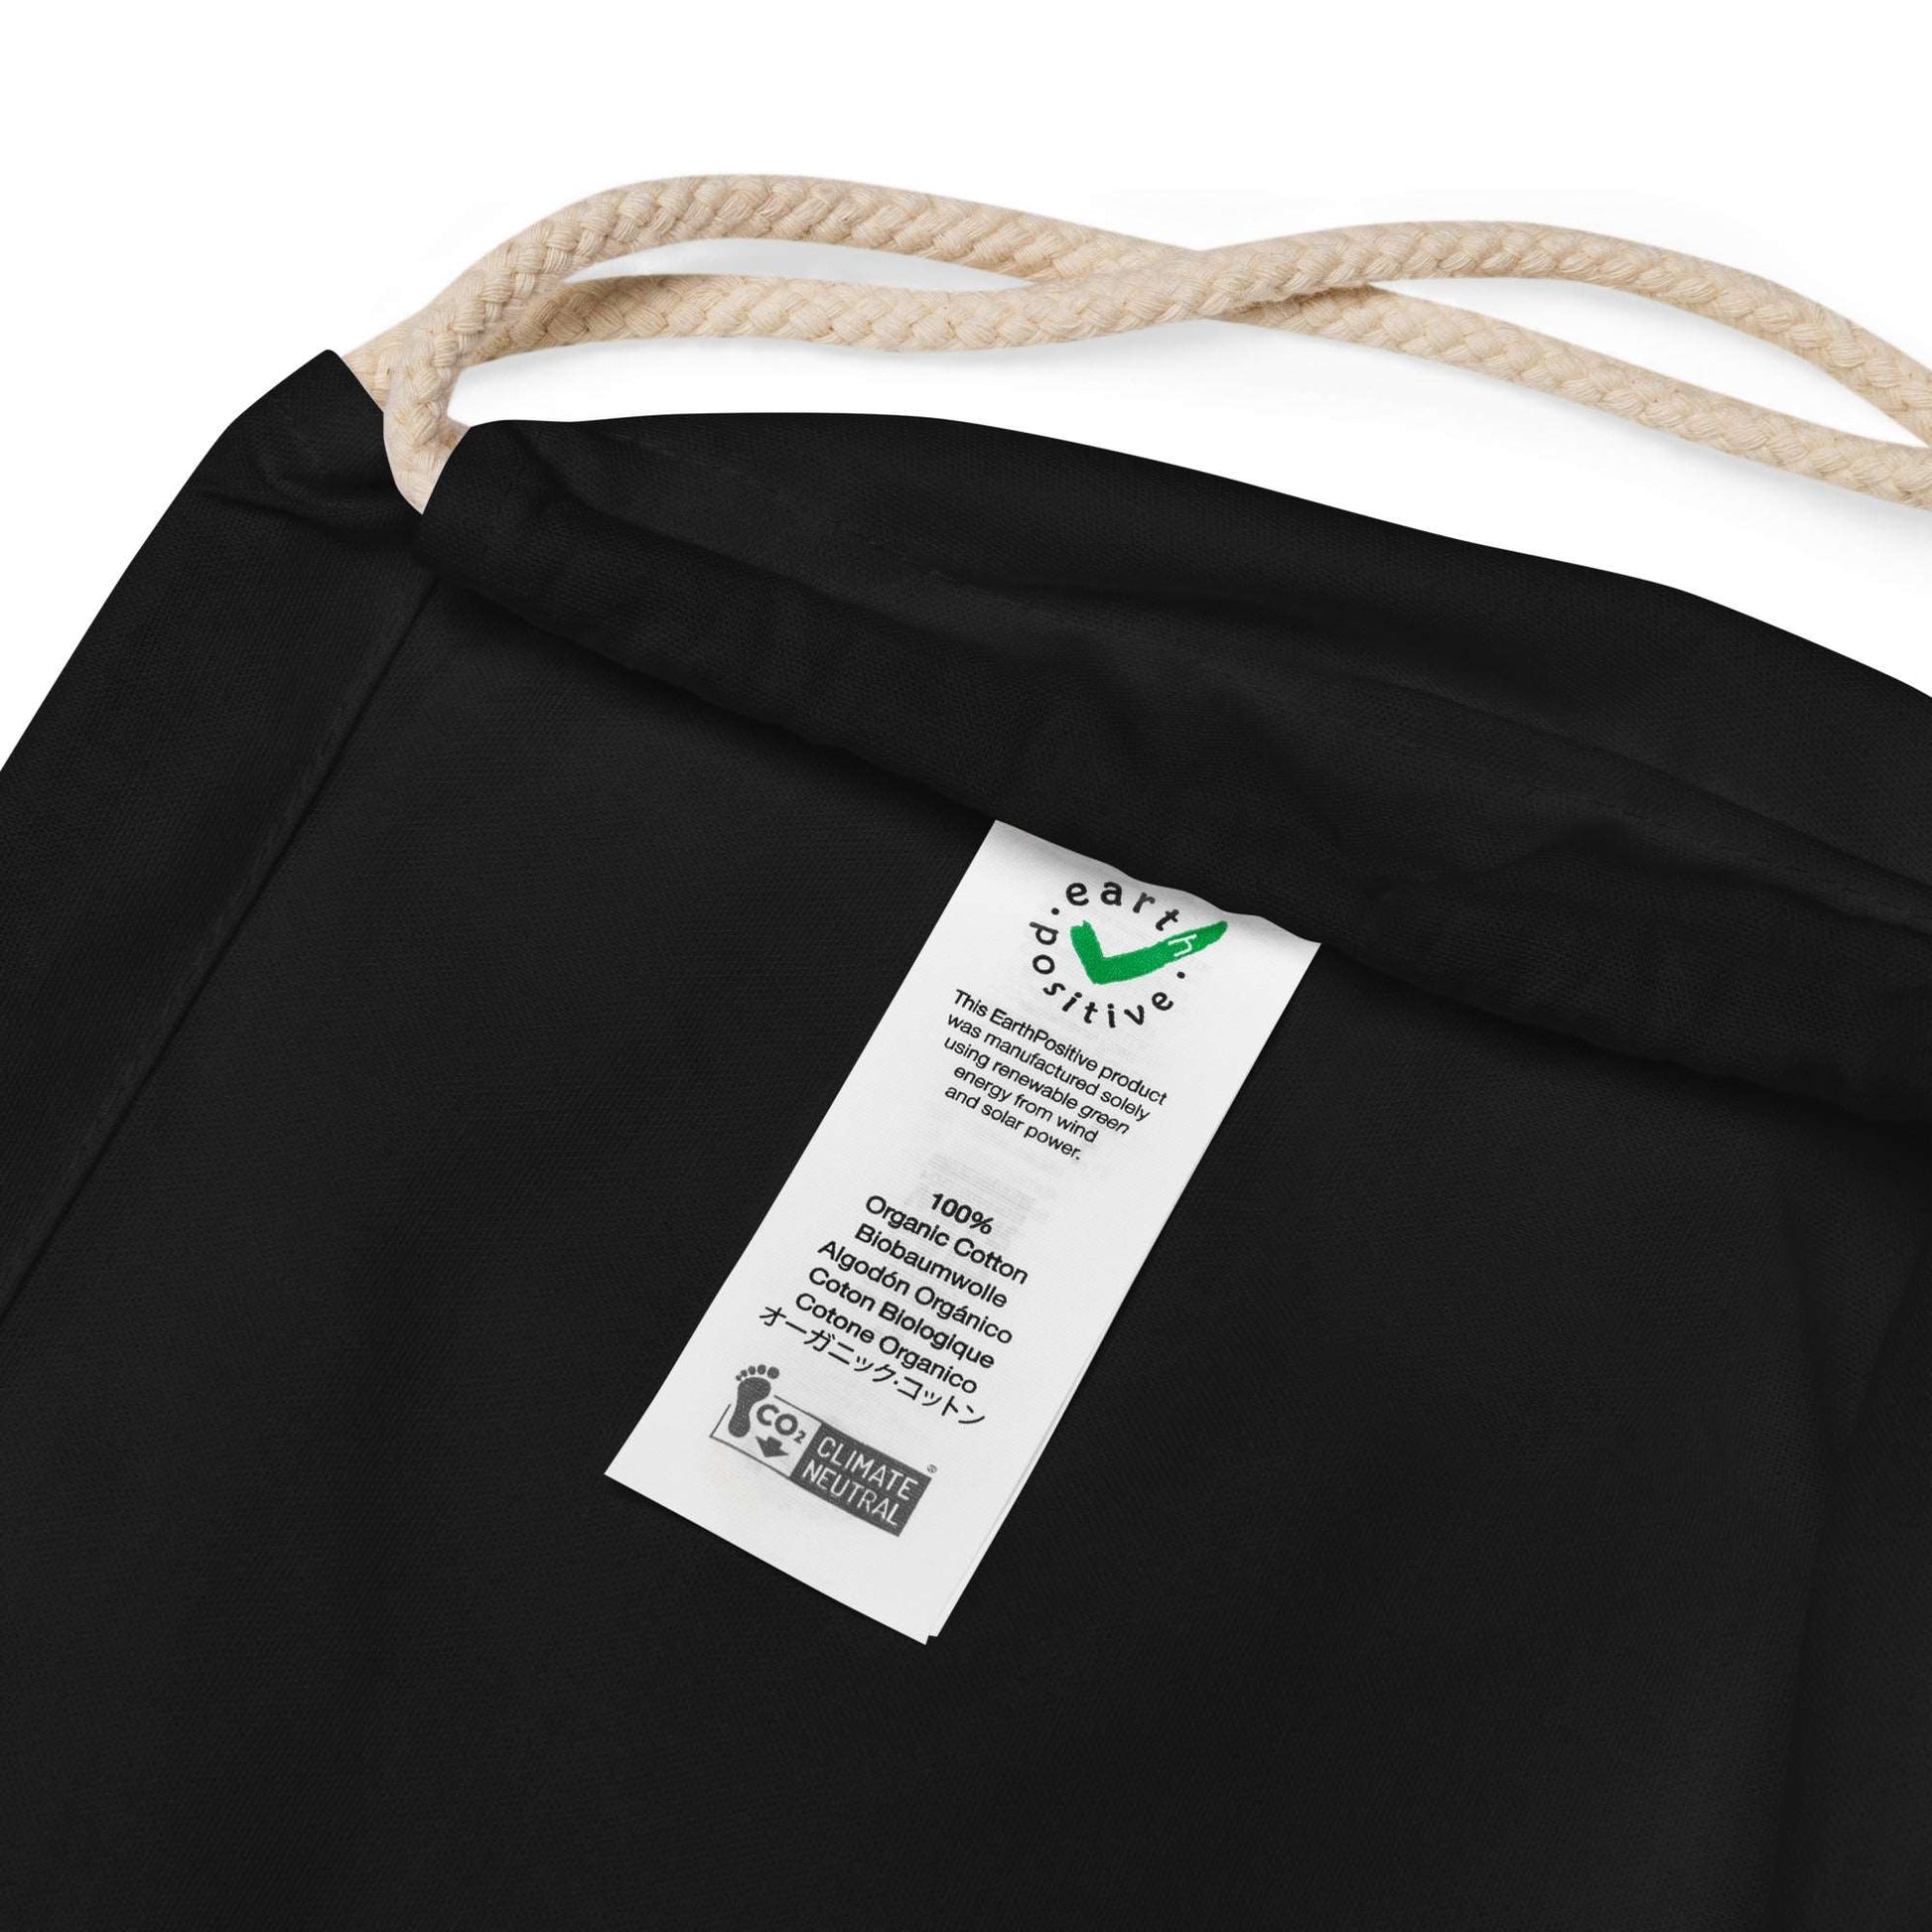 Organic cotton drawstring bag Merida